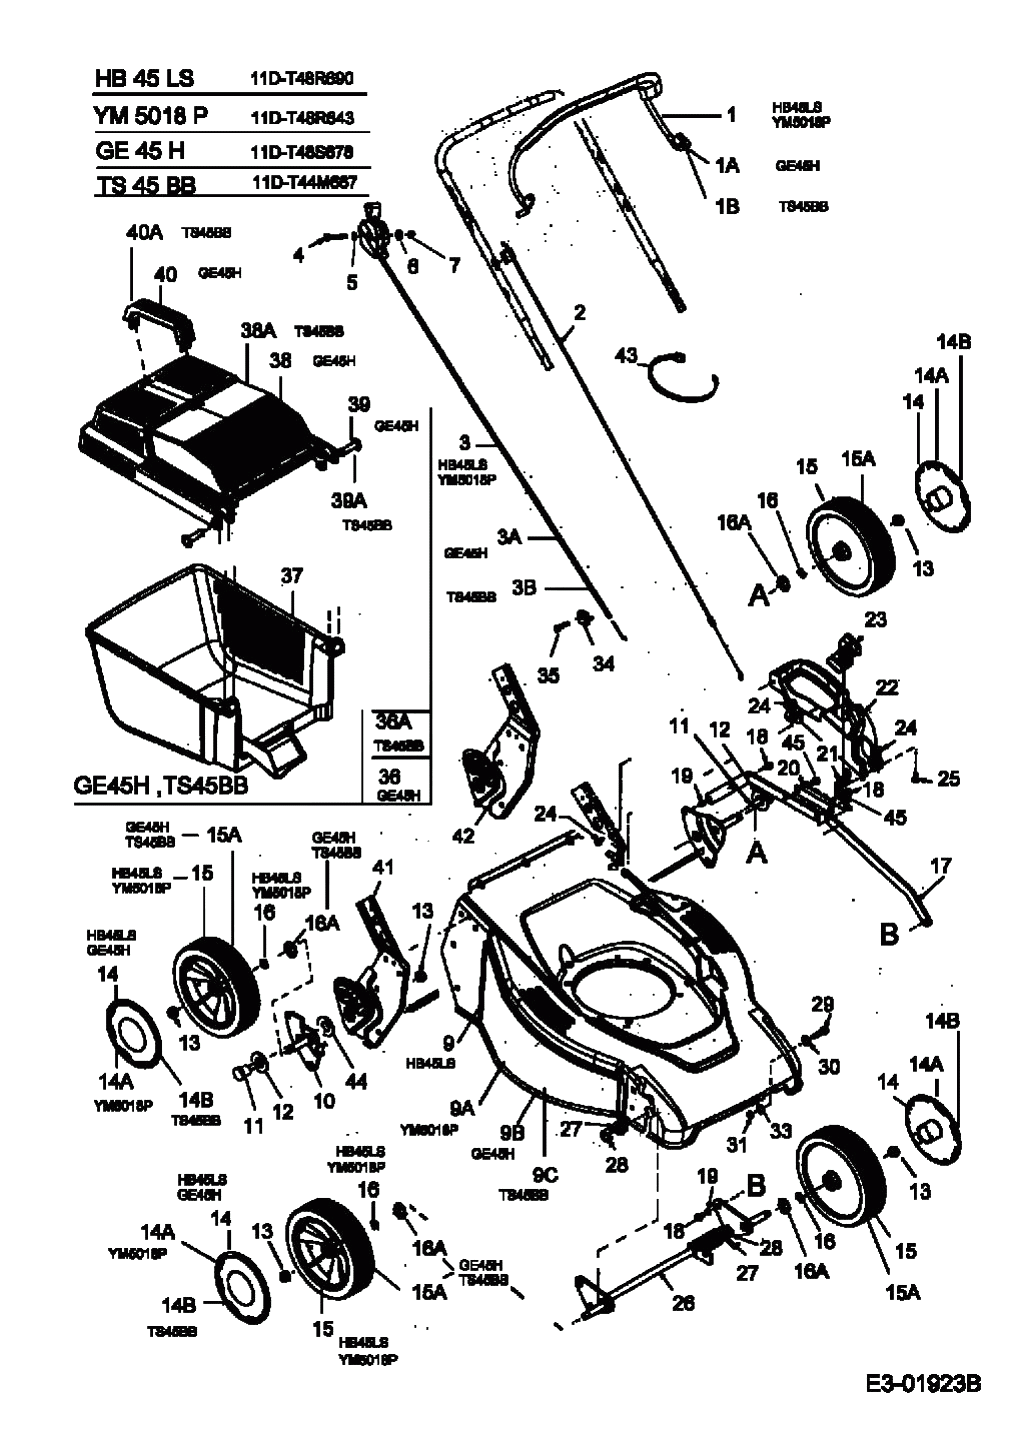 MTD Артикул 11D-T48S678 (год выпуска 2005). Травосборник, колеса, Регулятор высоты среза